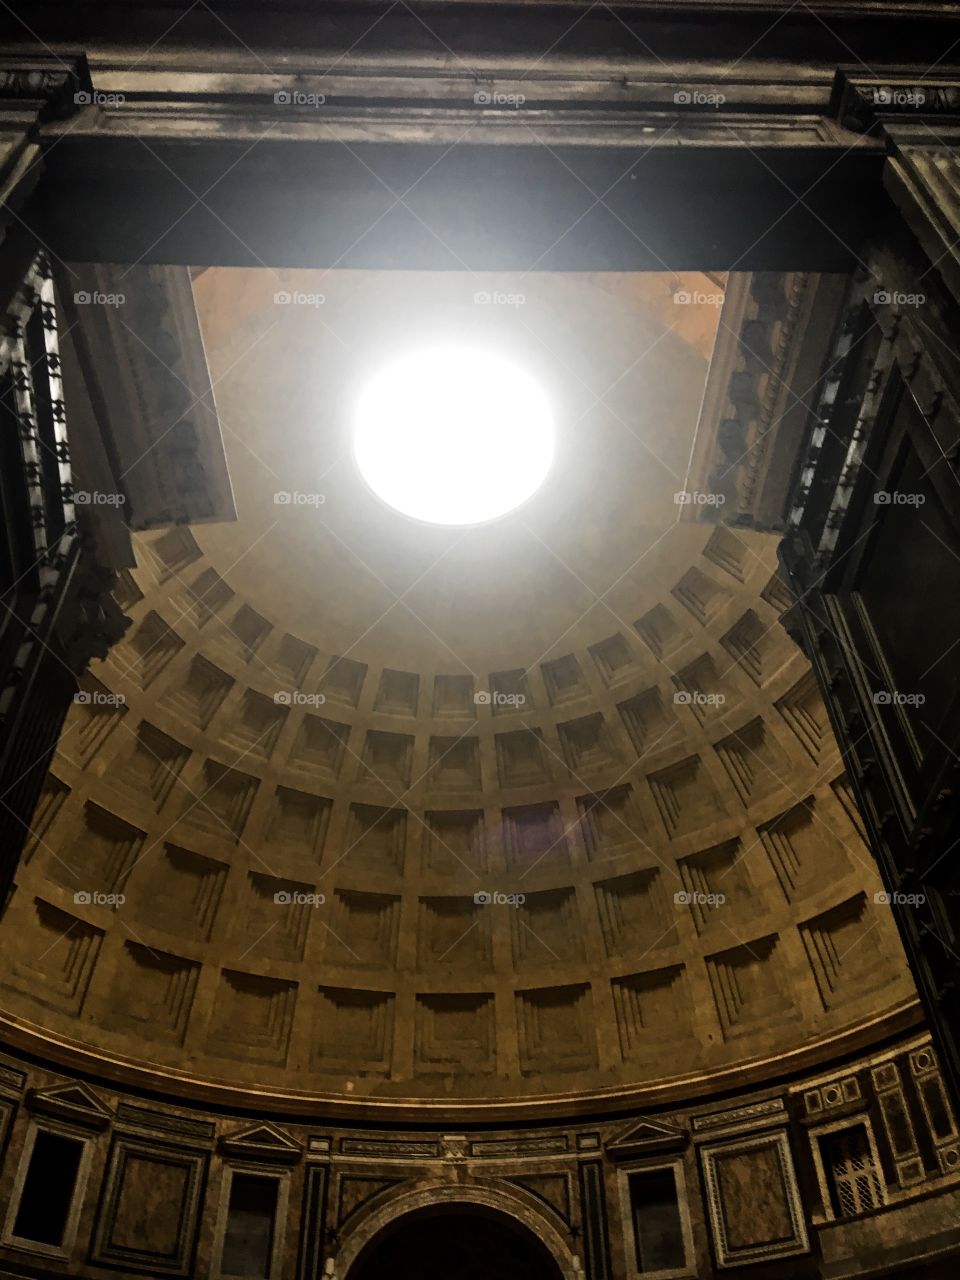 Pantheon. Roma. Italy. 